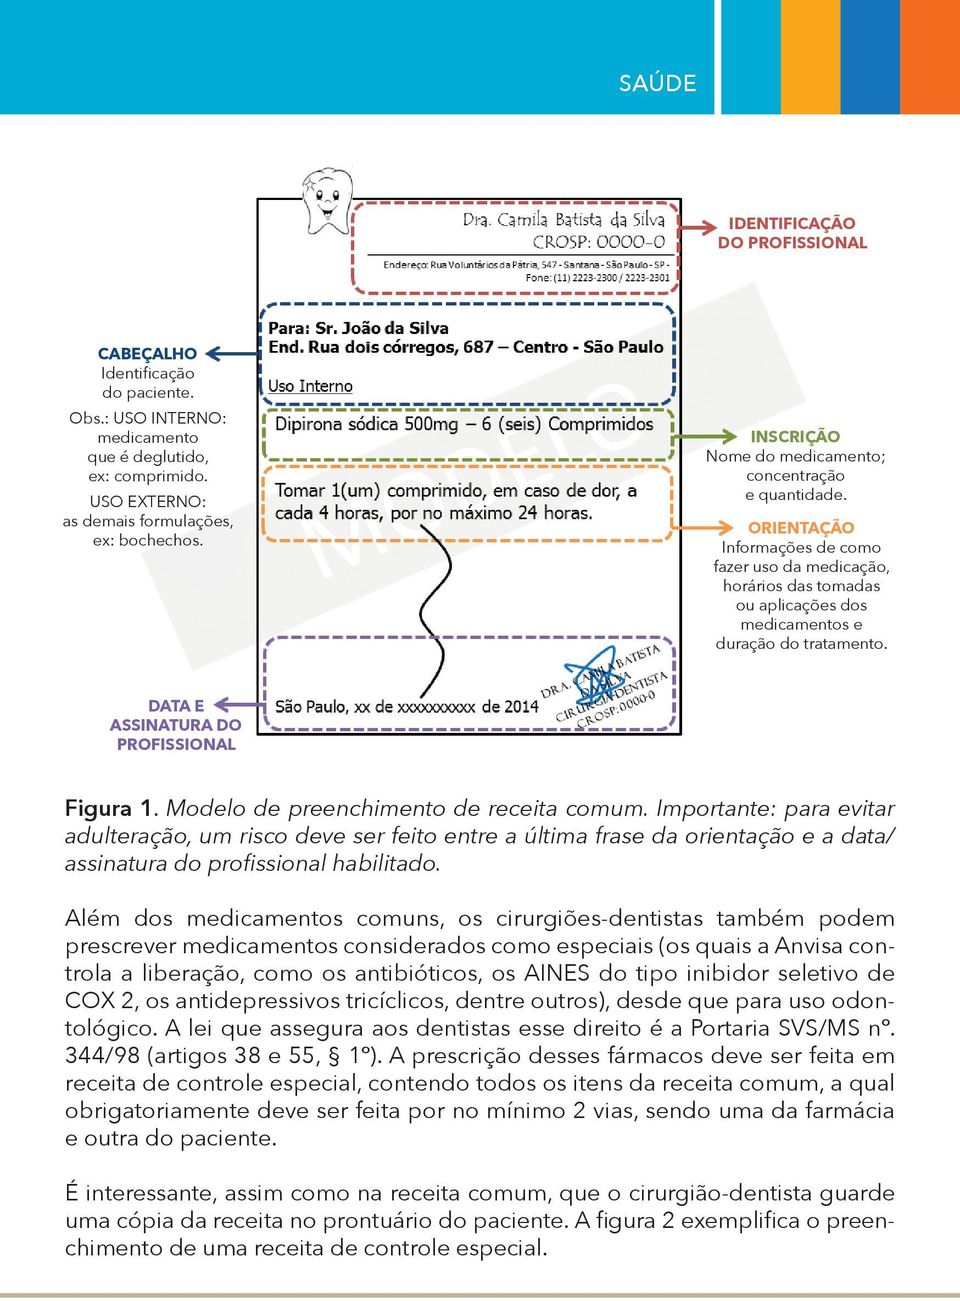 DATA E ASSINATURA DO PROFISSIONAL figura 1. Modelo de preenchimento de receita comum.